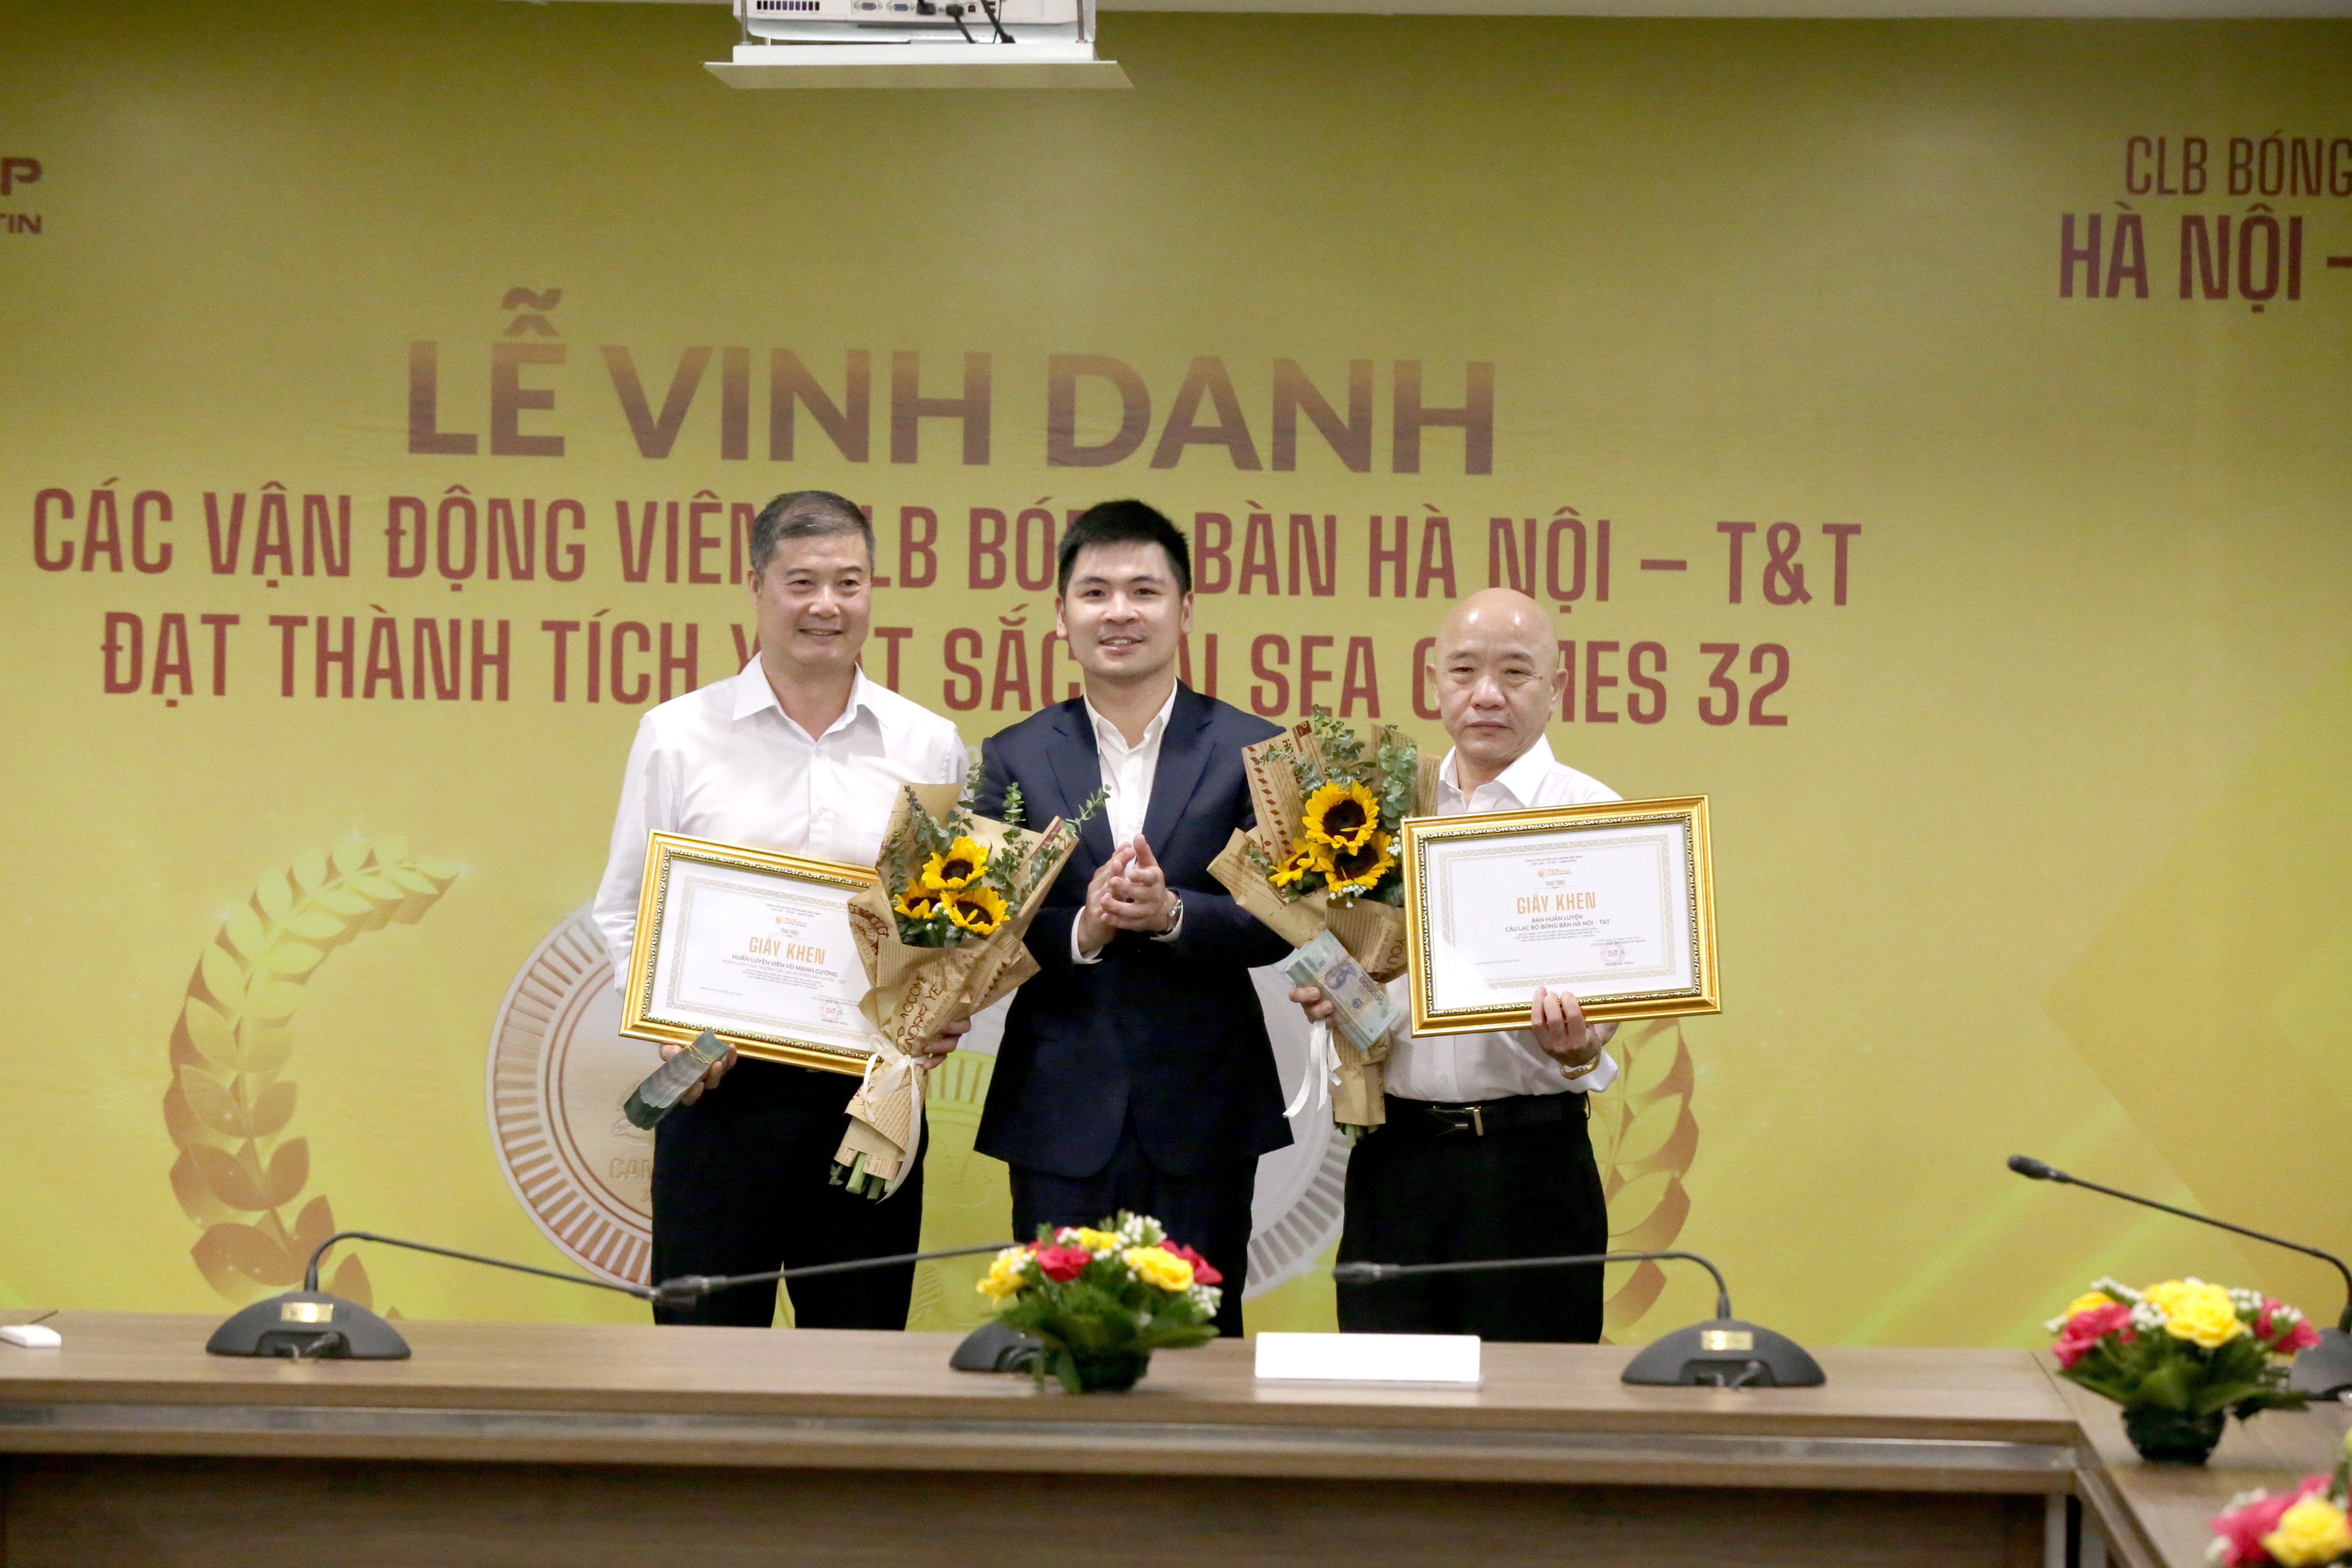 Thành viên ban huấn luyện CLB bóng bàn Hà Nội T&T được vinh danh